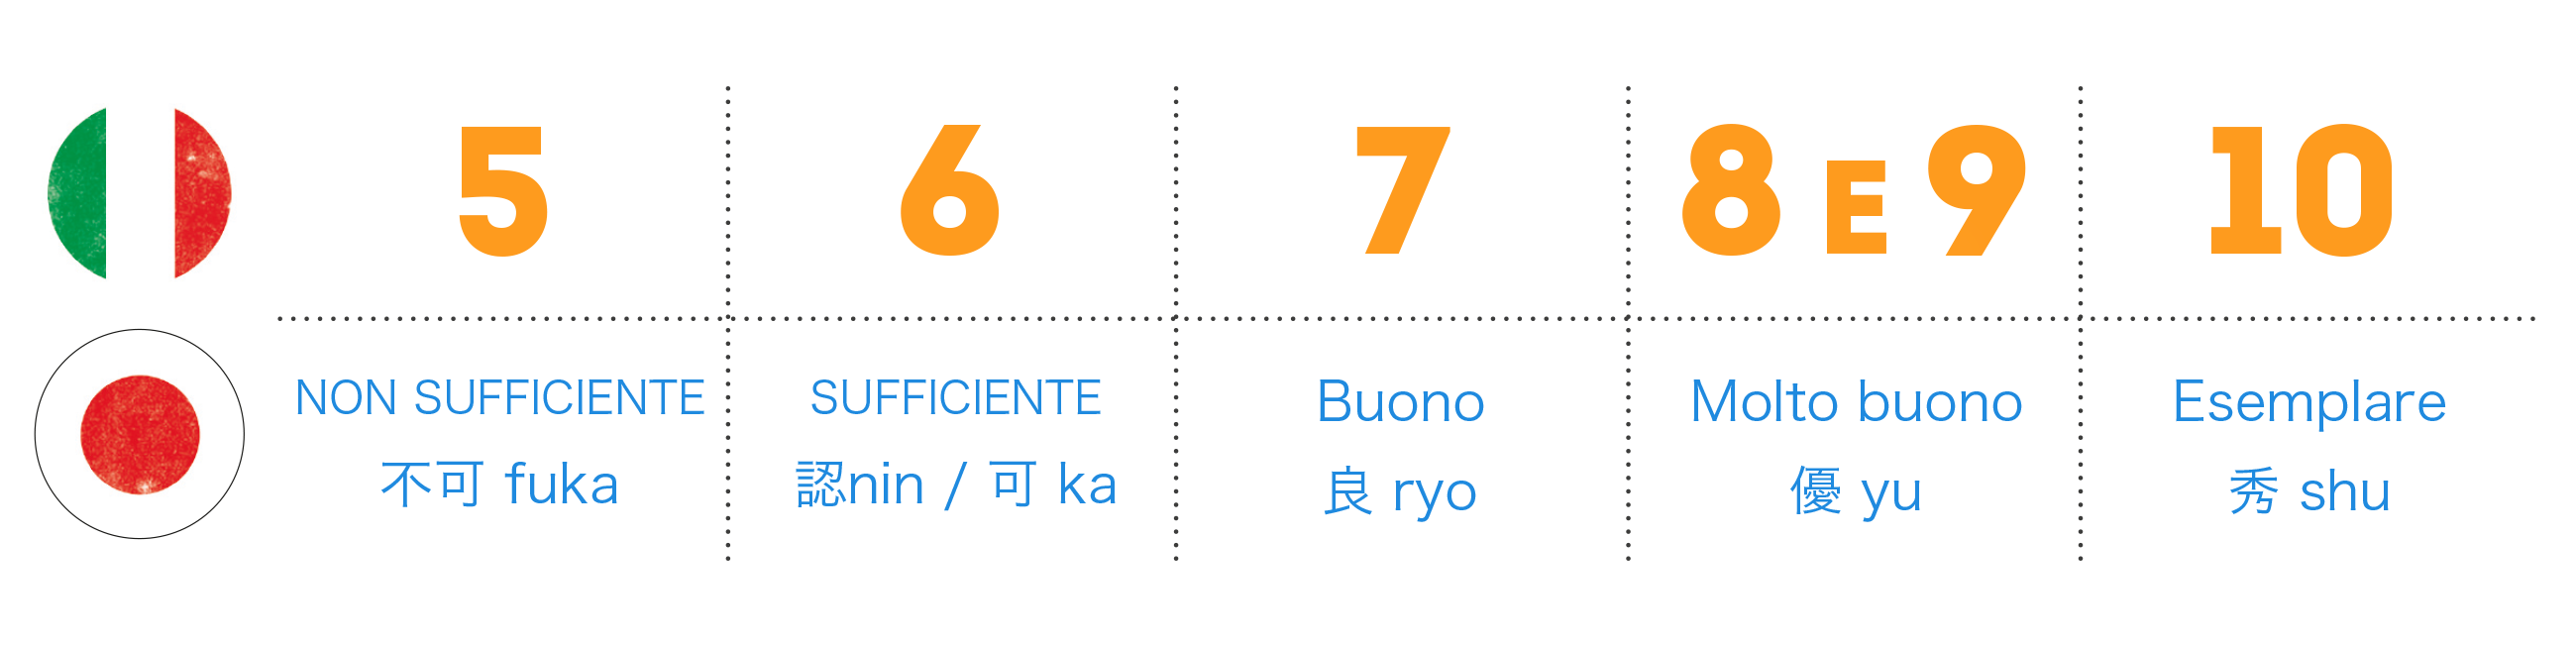 Schema in cui si equiparano i voti in numeri italiani e le votazioni in lettere del sistema scolastico del Giappone